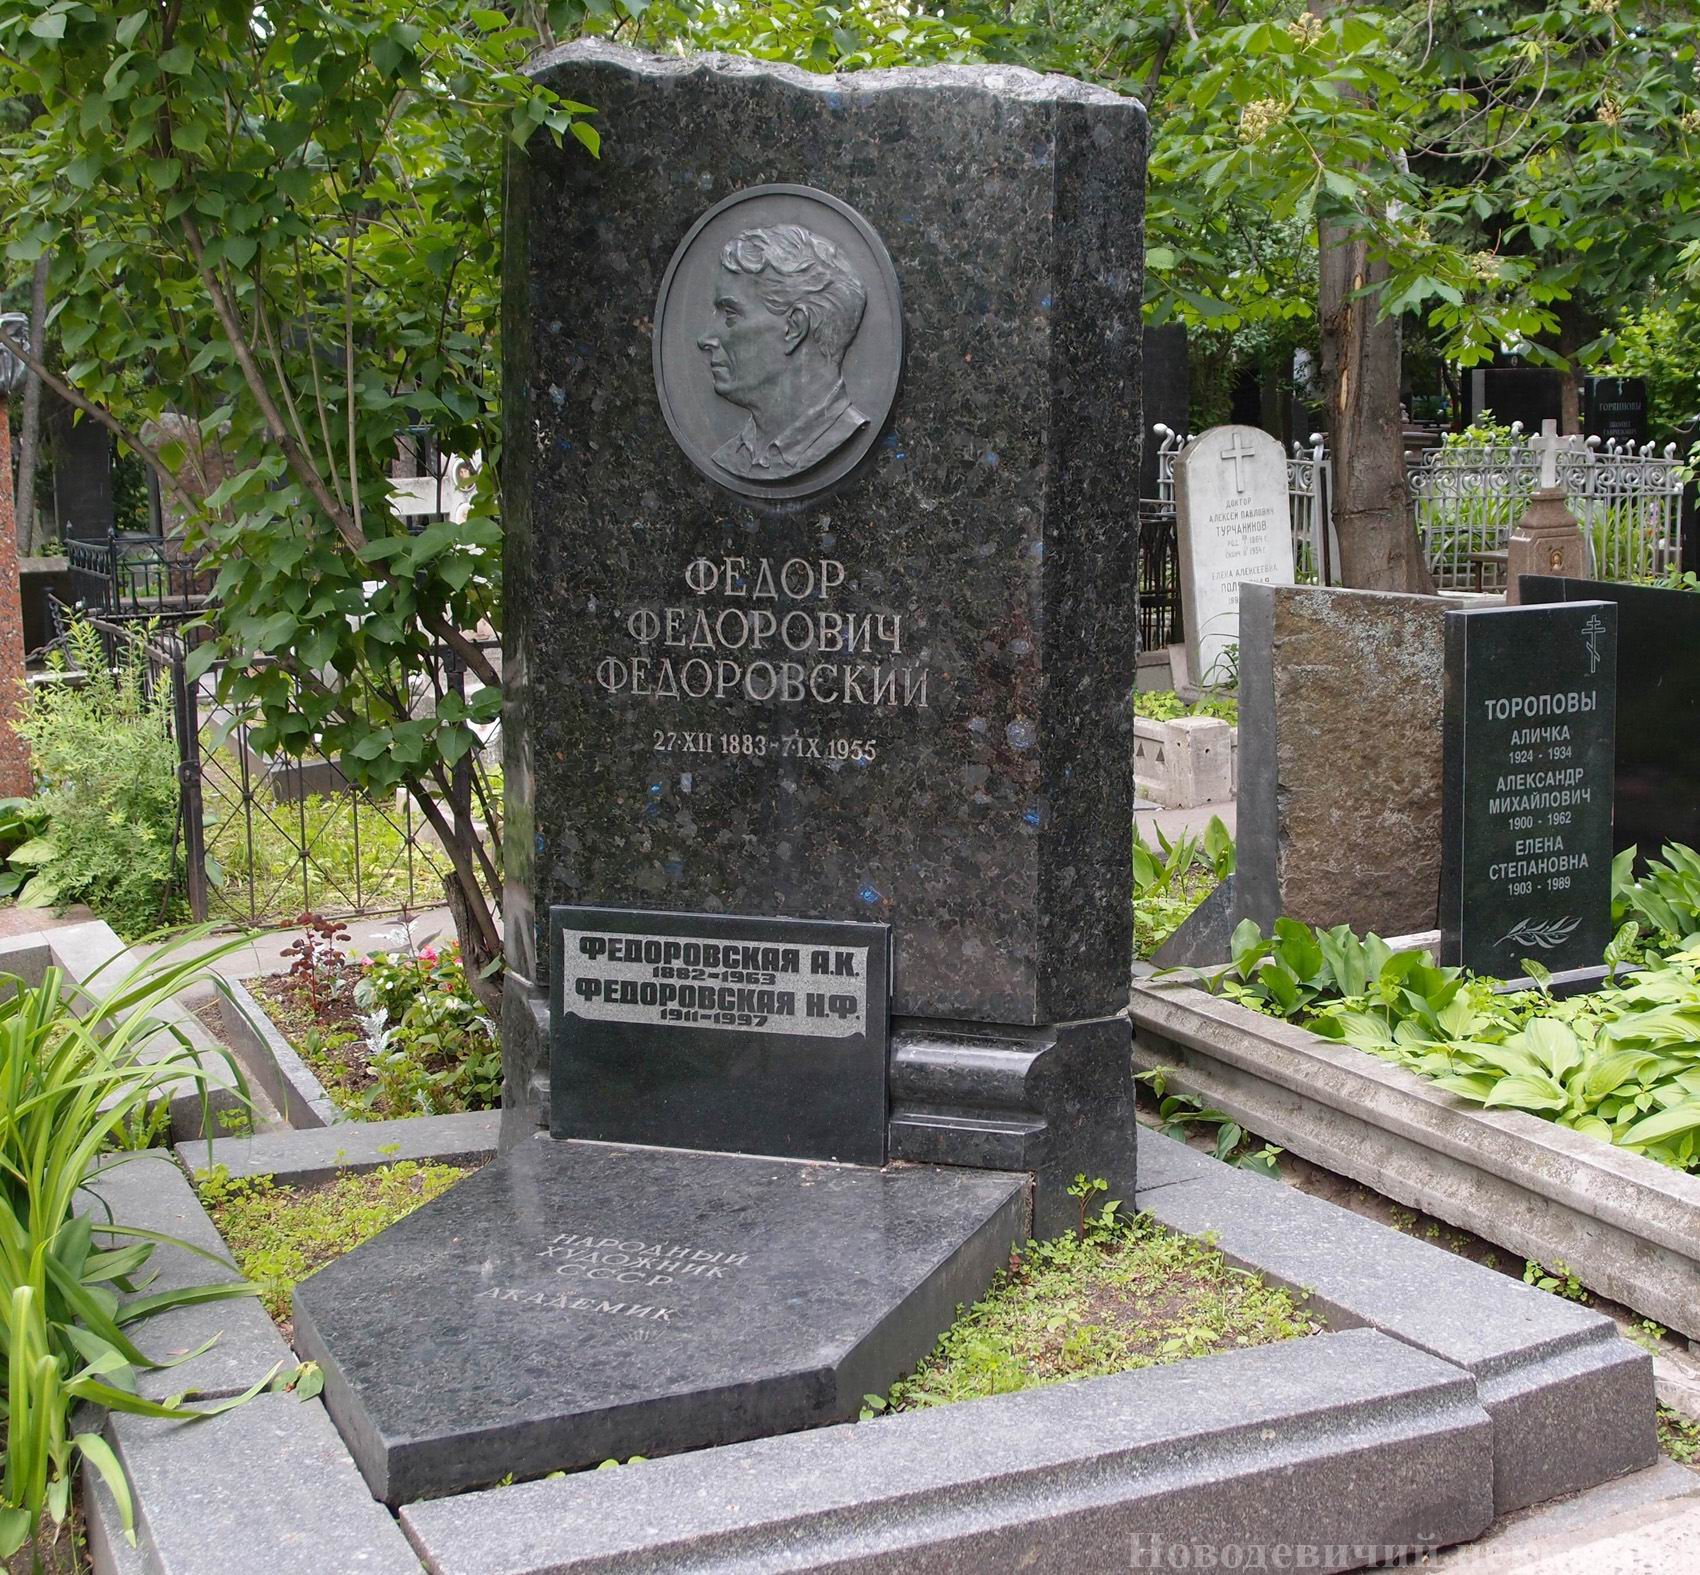 Памятник на могиле Федоровского Ф.Ф. (1883–1955), ск. М.Ярославская, худ. Н.Федоровская, на Новодевичьем кладбище (1–14–3).